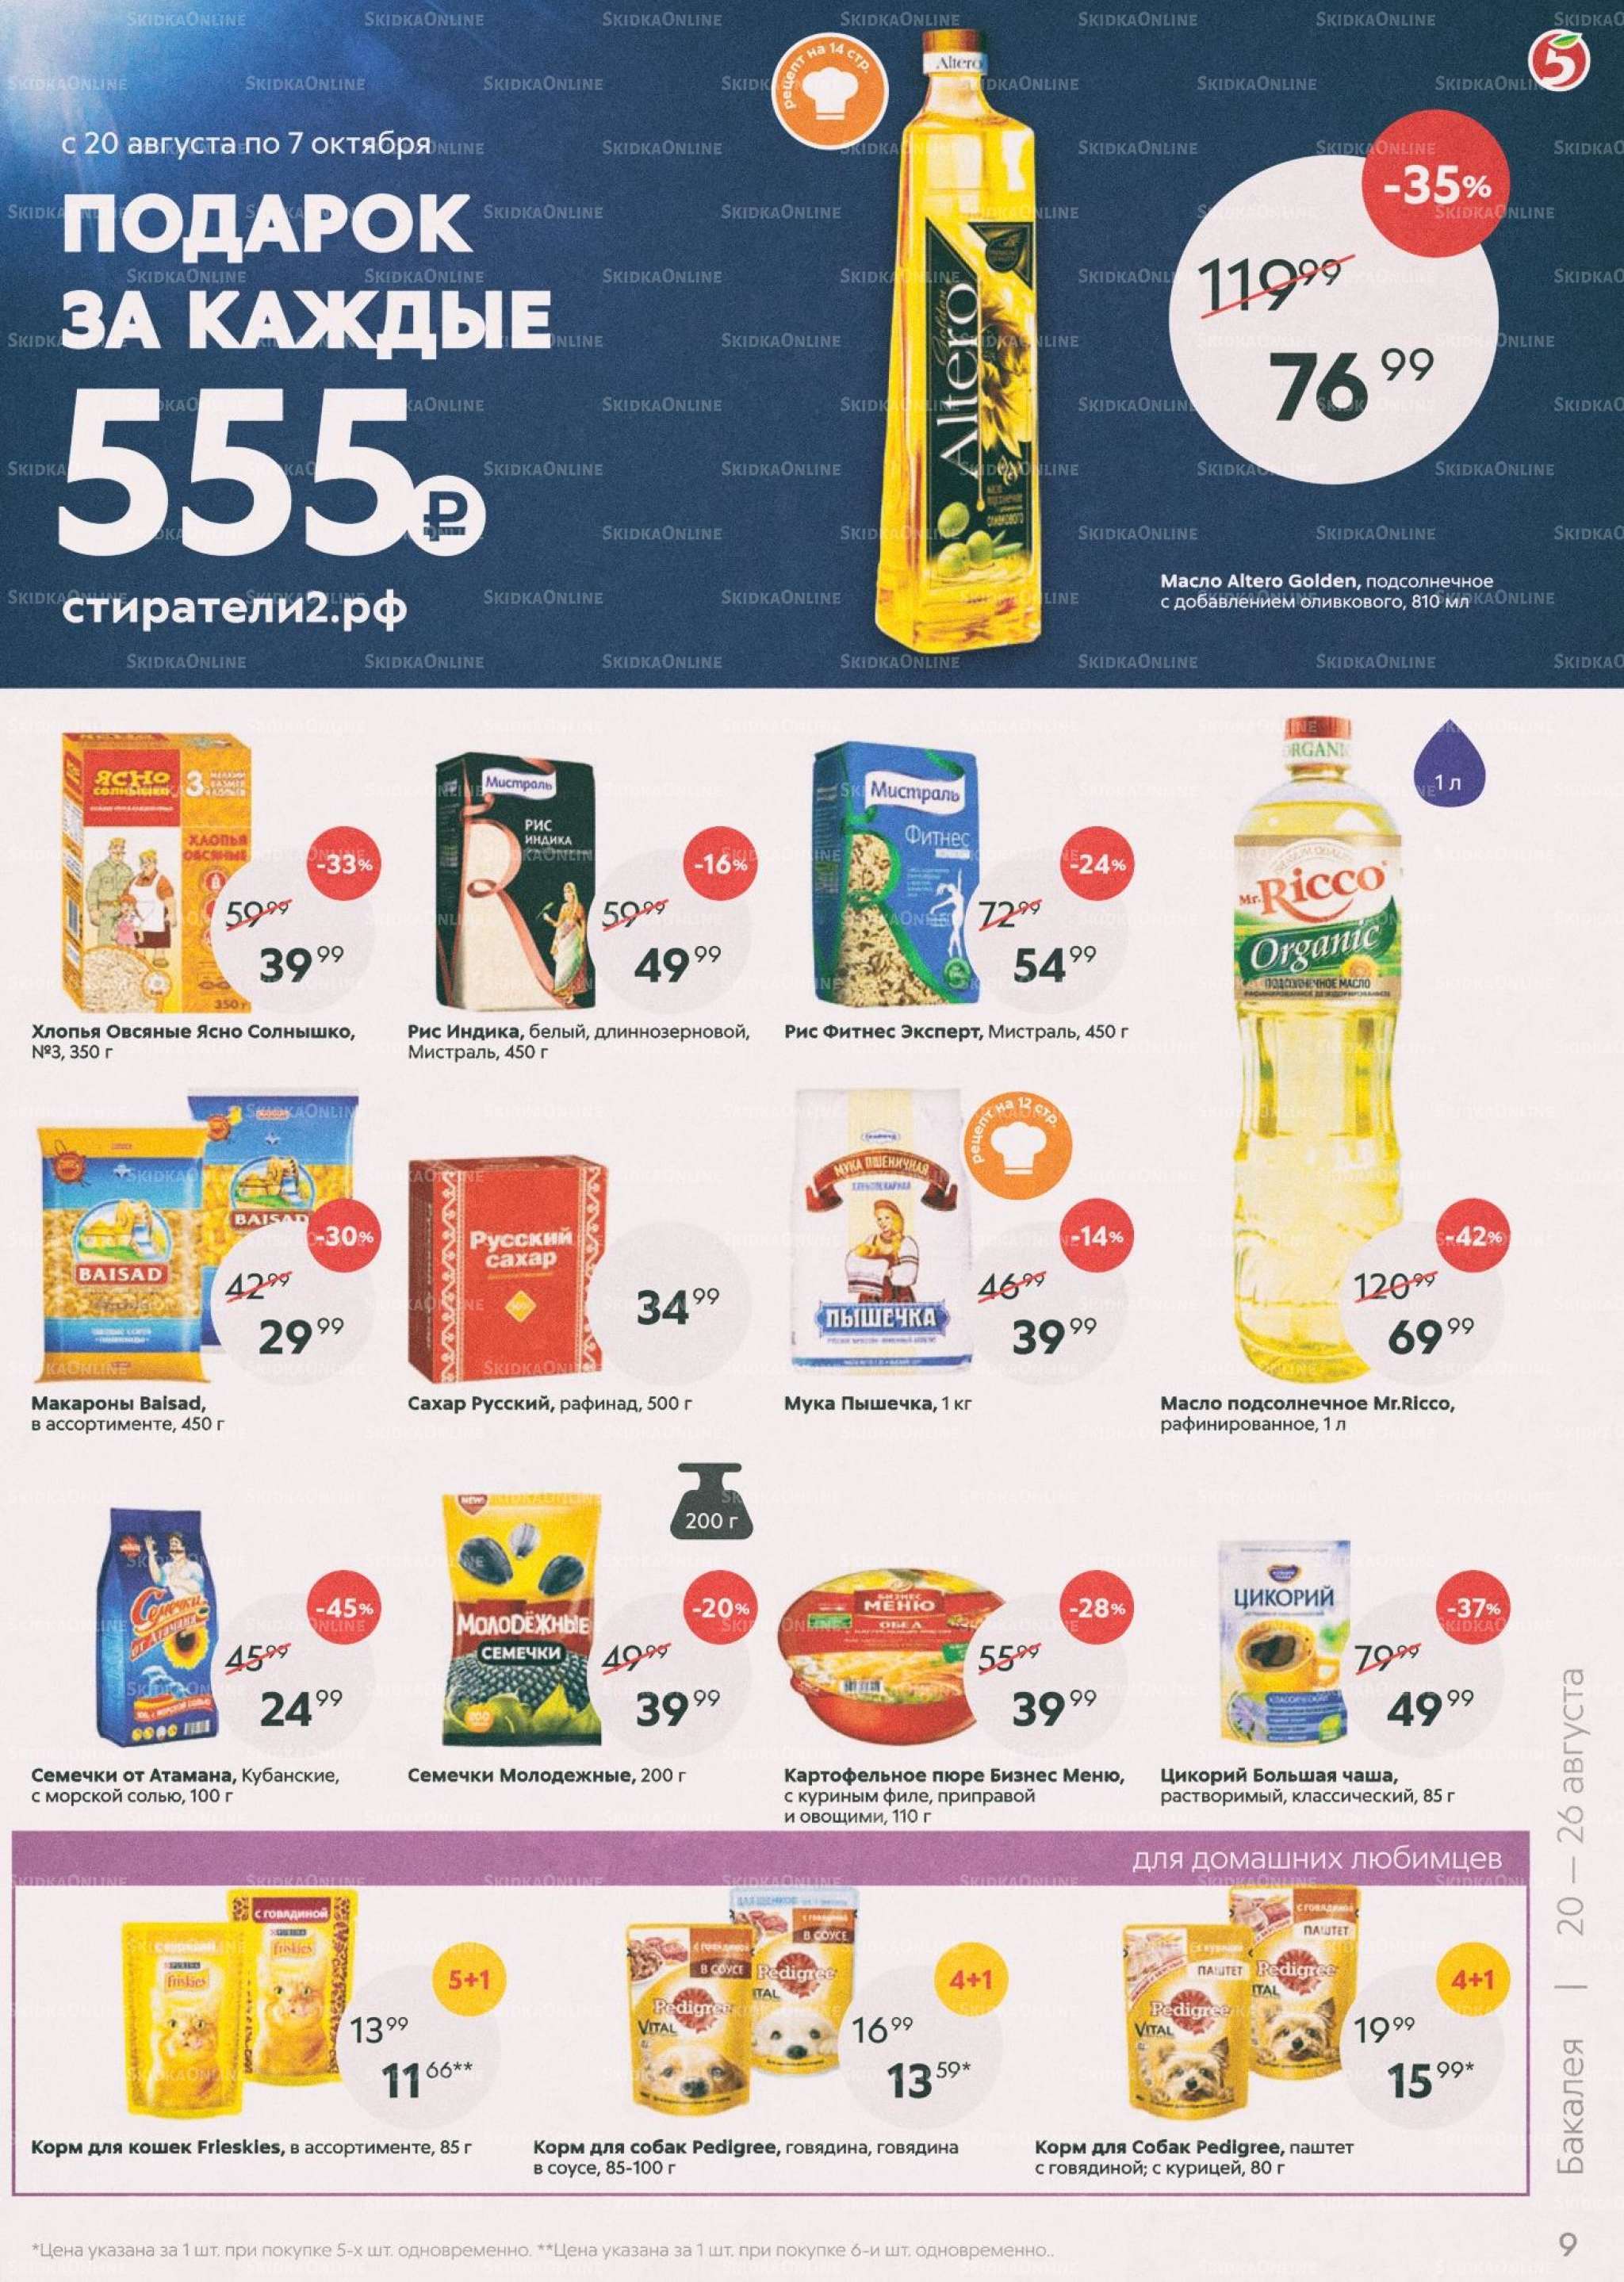 Акции в магазинах Пятерочка с 20 по 26 августа.